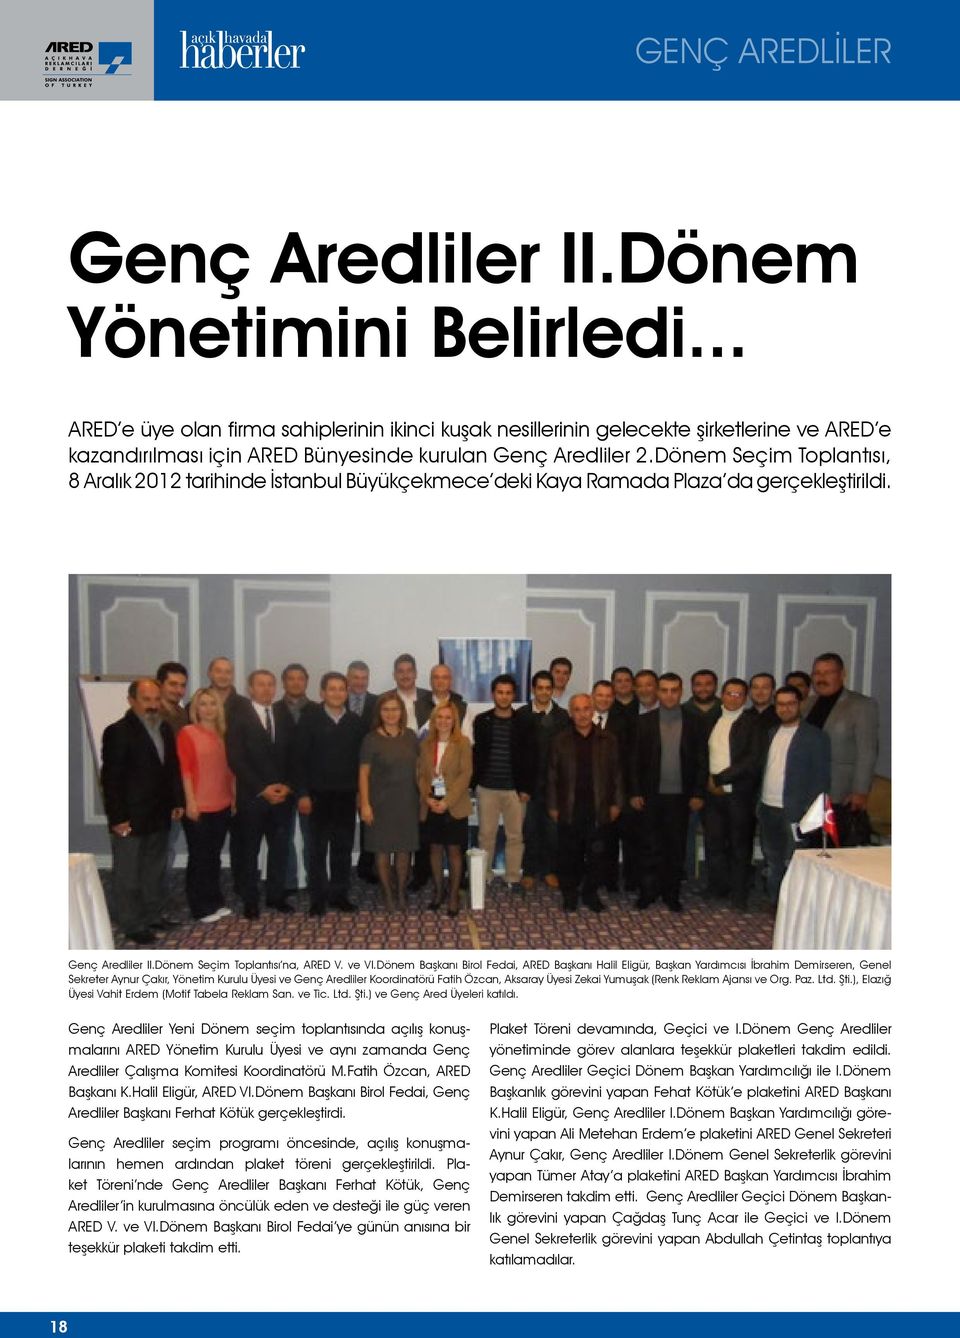 Dönem Seçim Toplantısı, 8 Aralık 2012 tarihinde İstanbul Büyükçekmece deki Kaya Ramada Plaza da gerçekleştirildi. Genç Aredliler II.Dönem Seçim Toplantısı na, ARED V. ve VI.